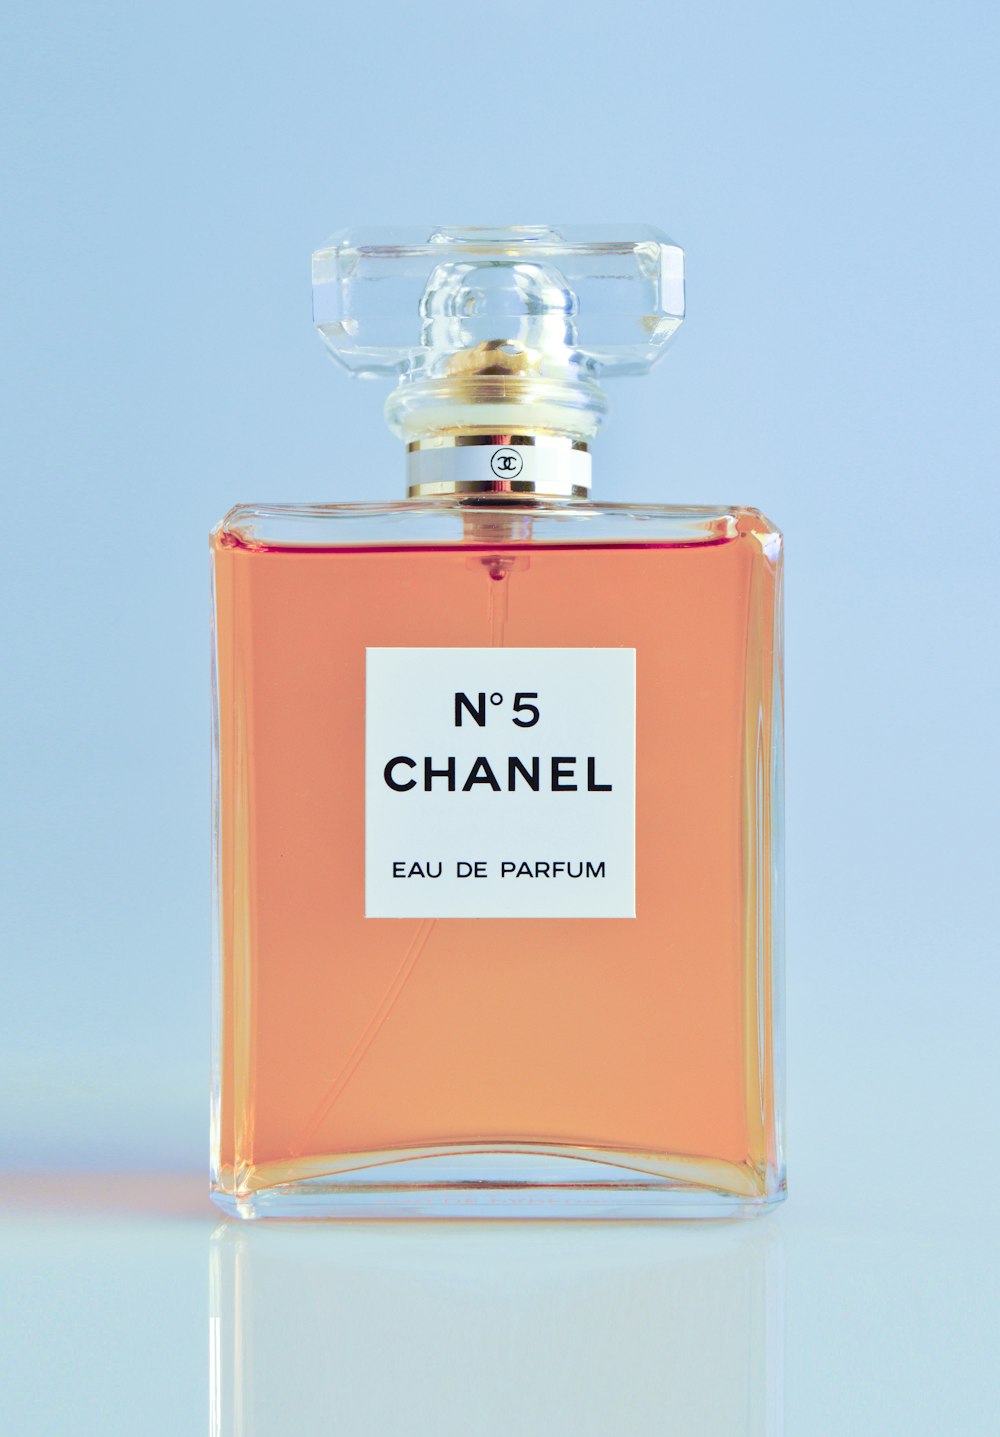 N5 Chanel vaporisateur d’eau de parfum